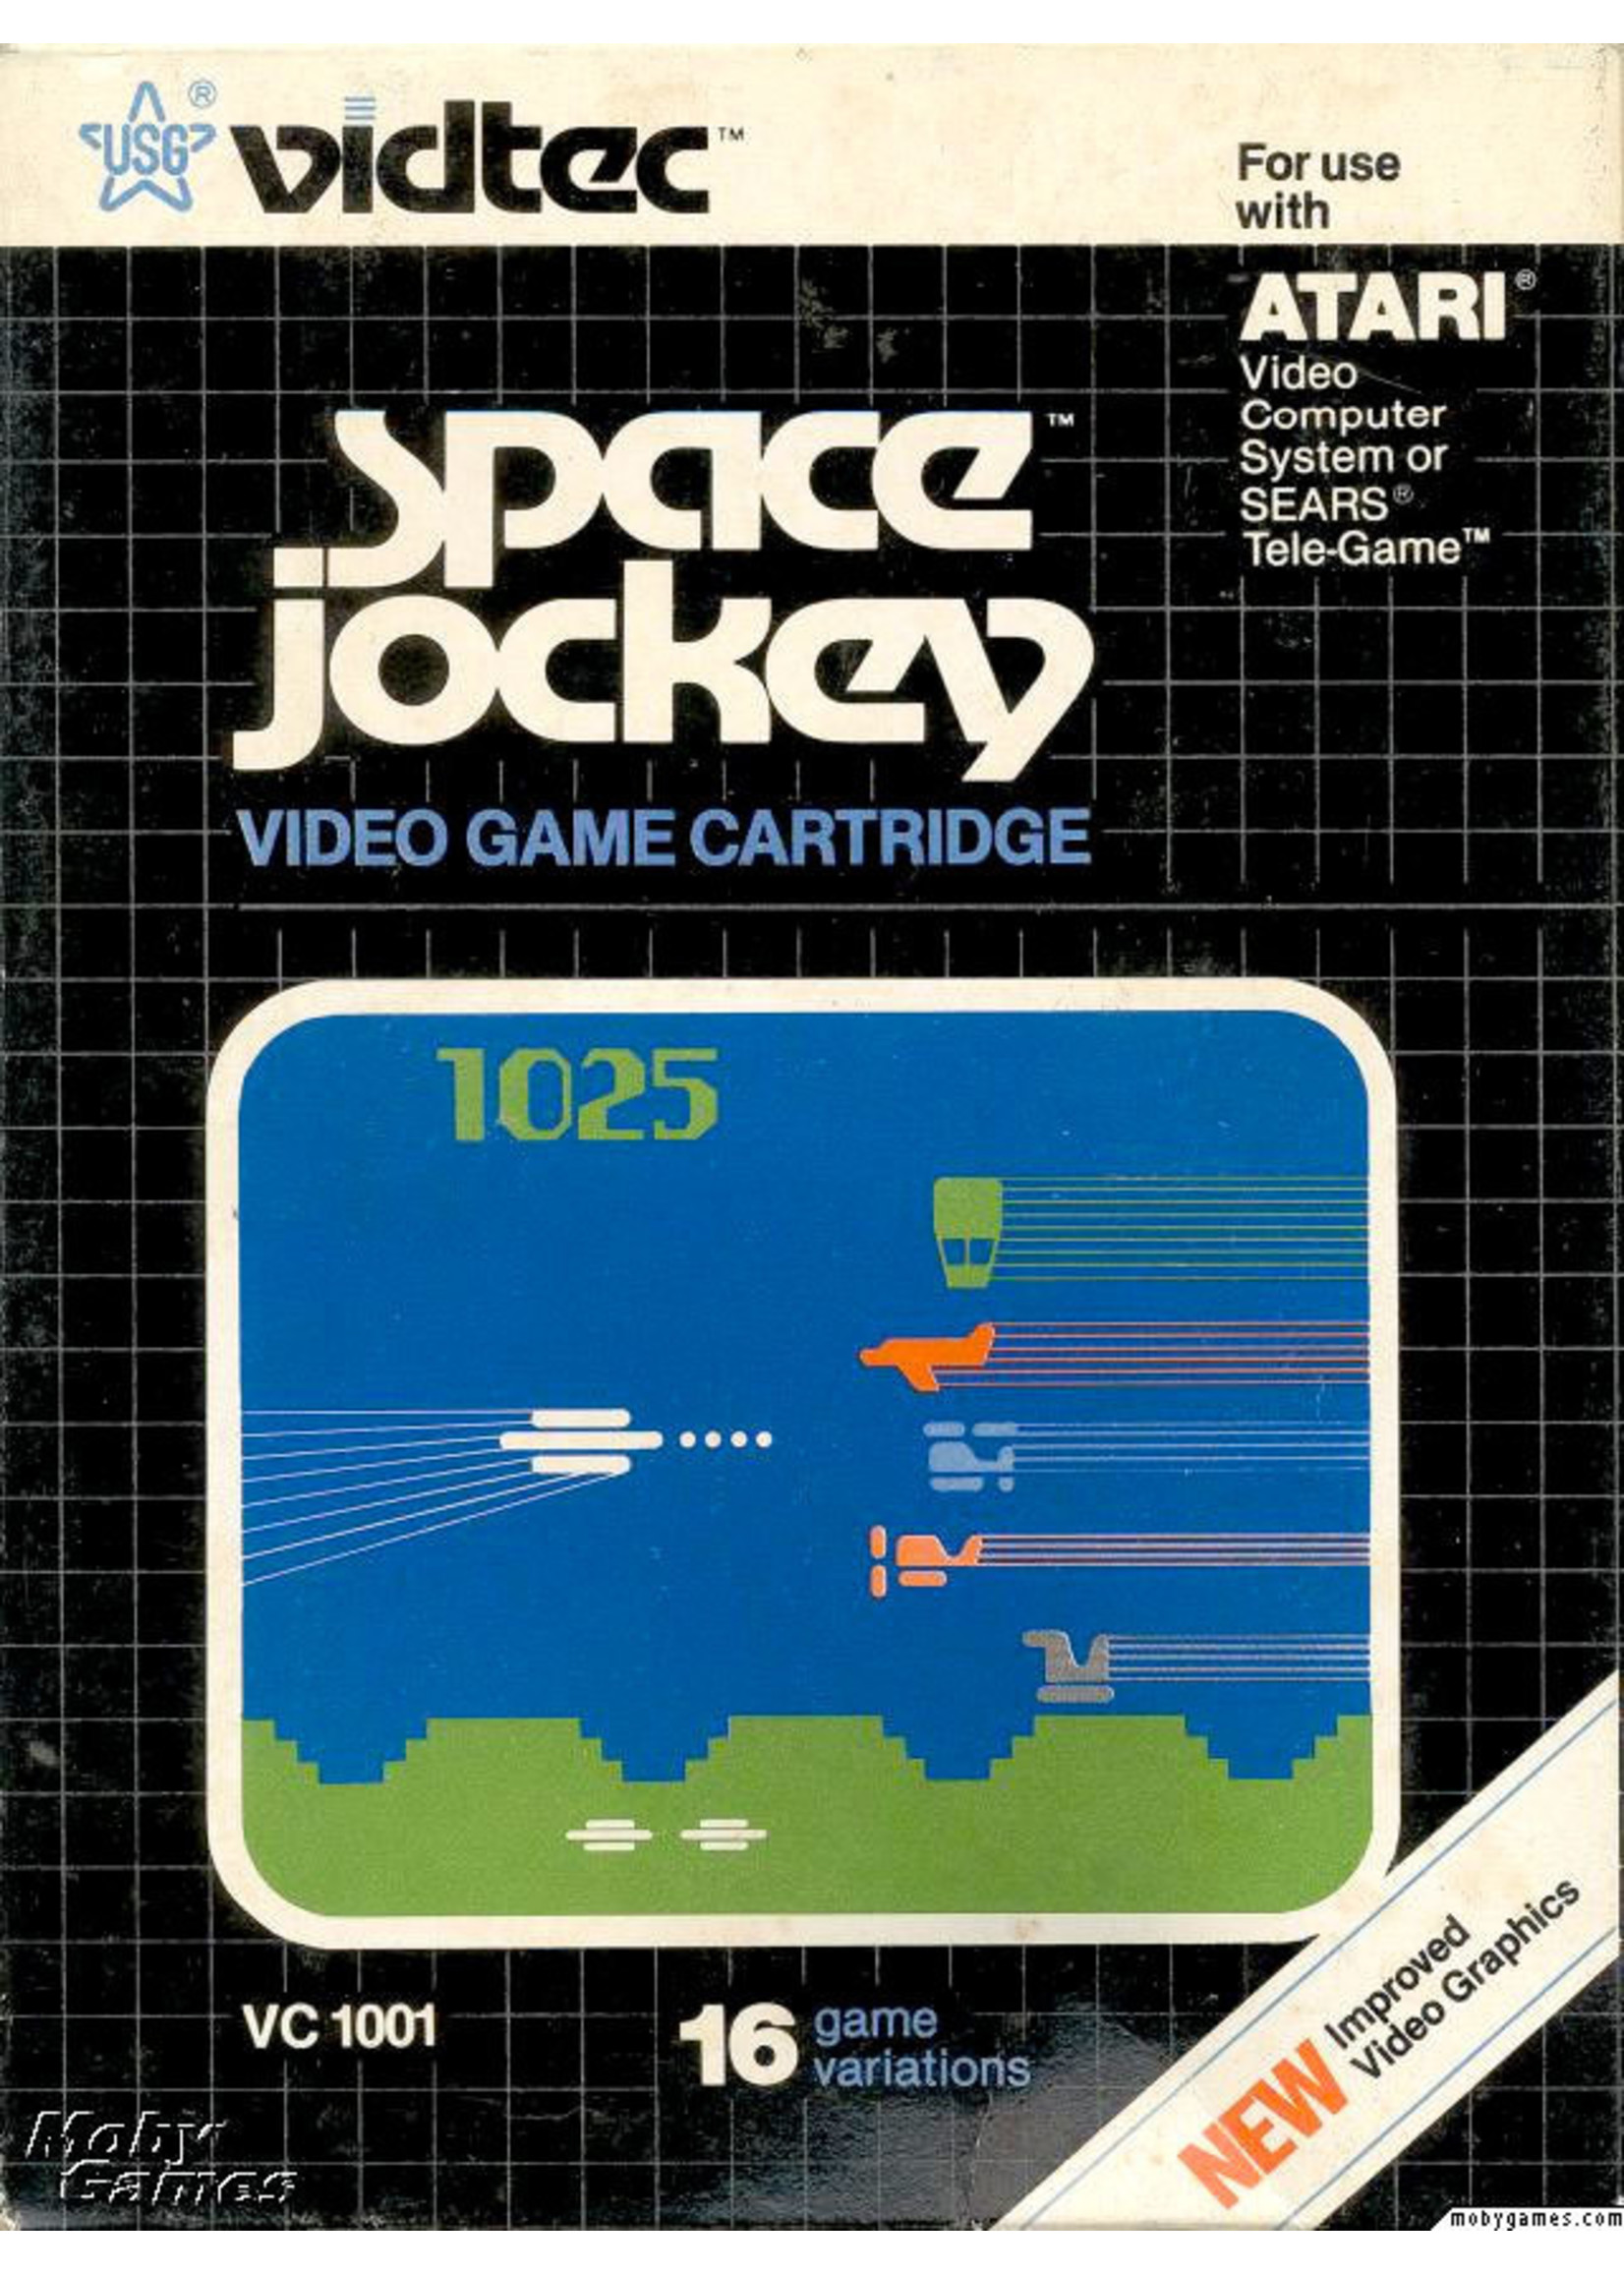 Atari 2600 Space Jockey